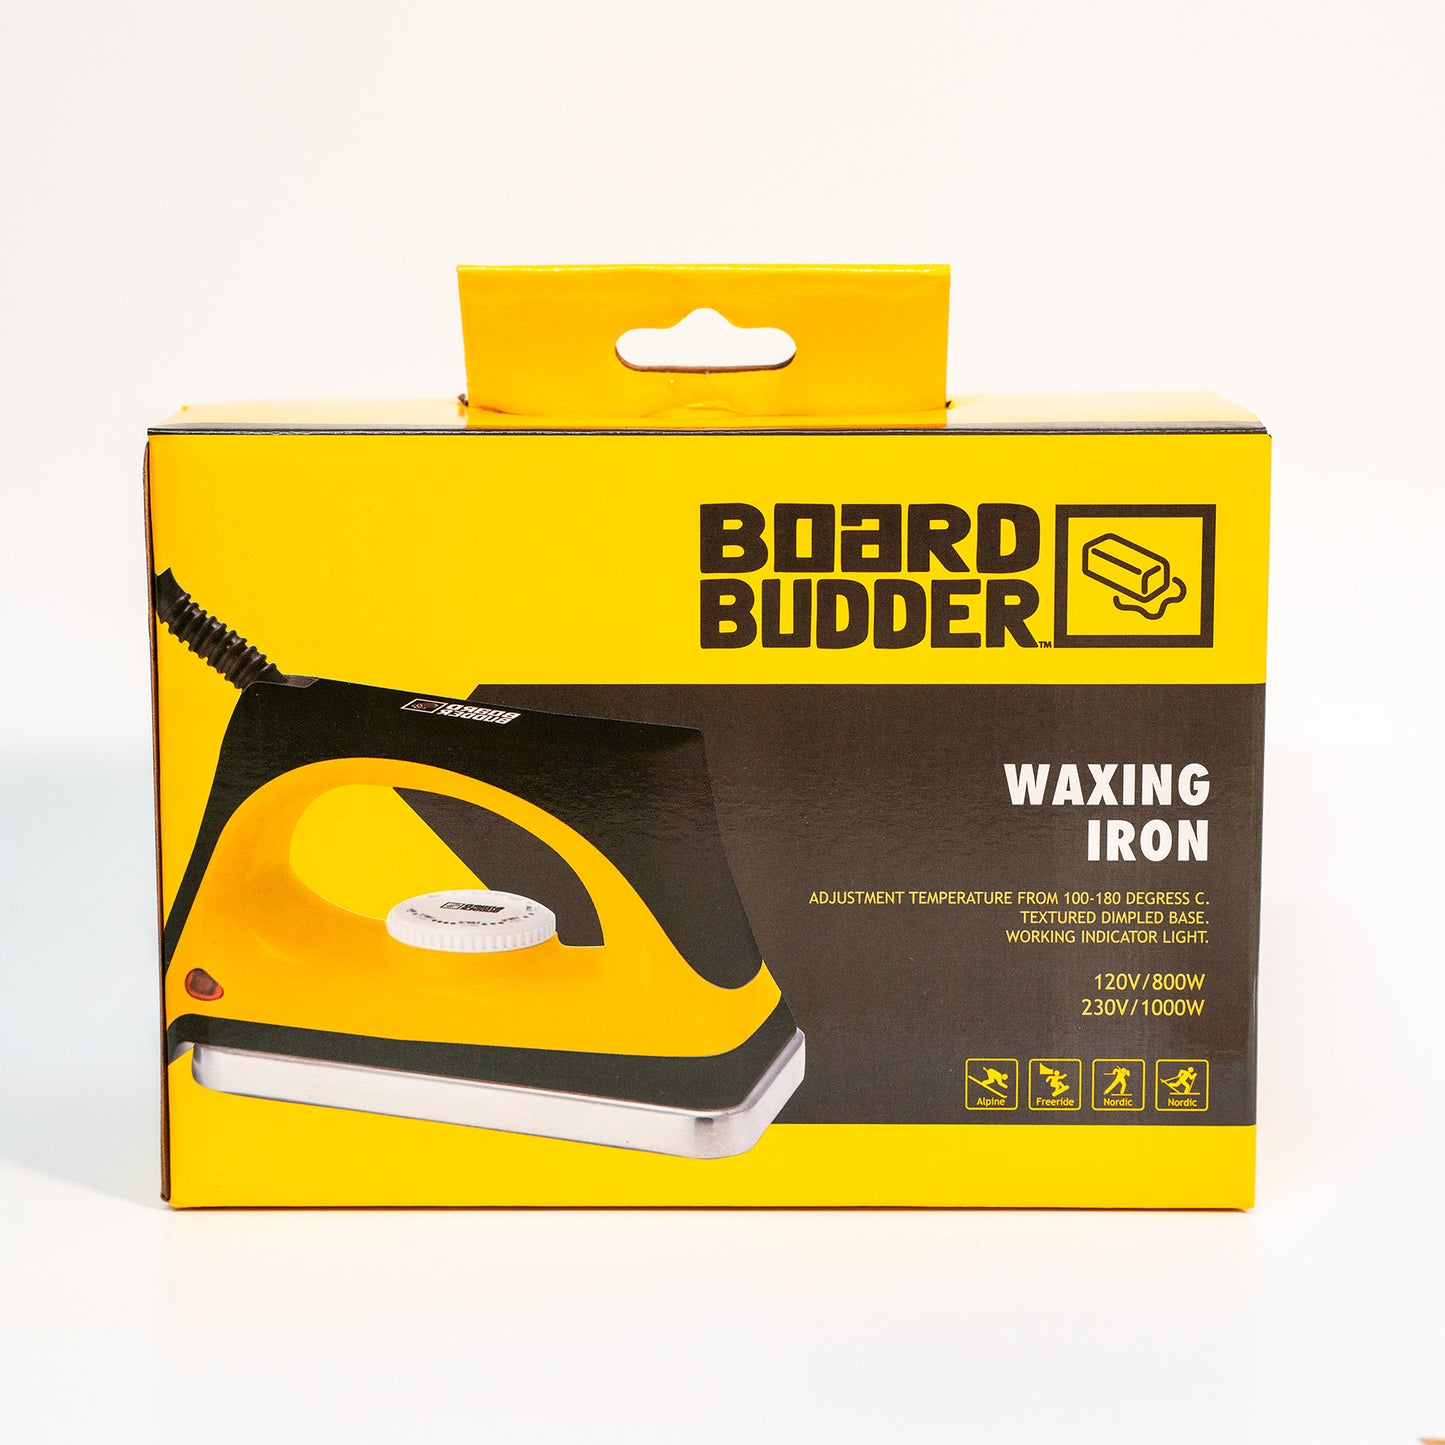 Board Budder Pro Wax Iron